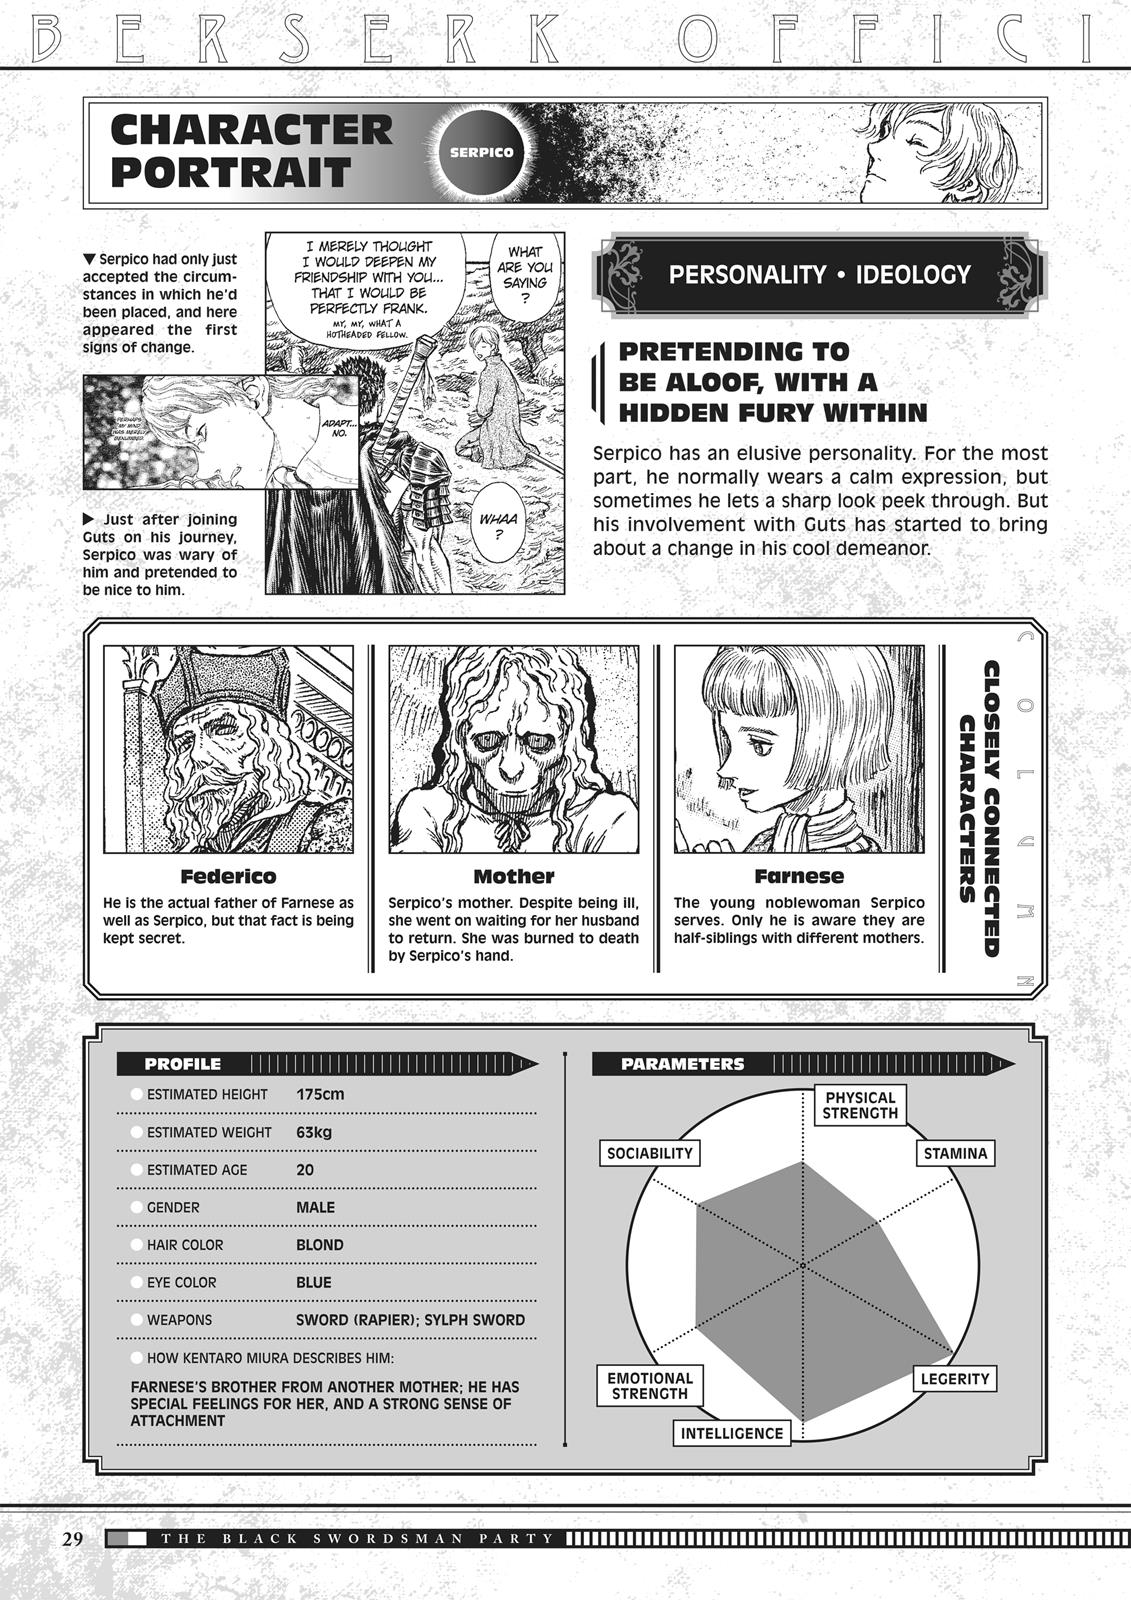 Berserk Manga Chapter 350.5 image 029